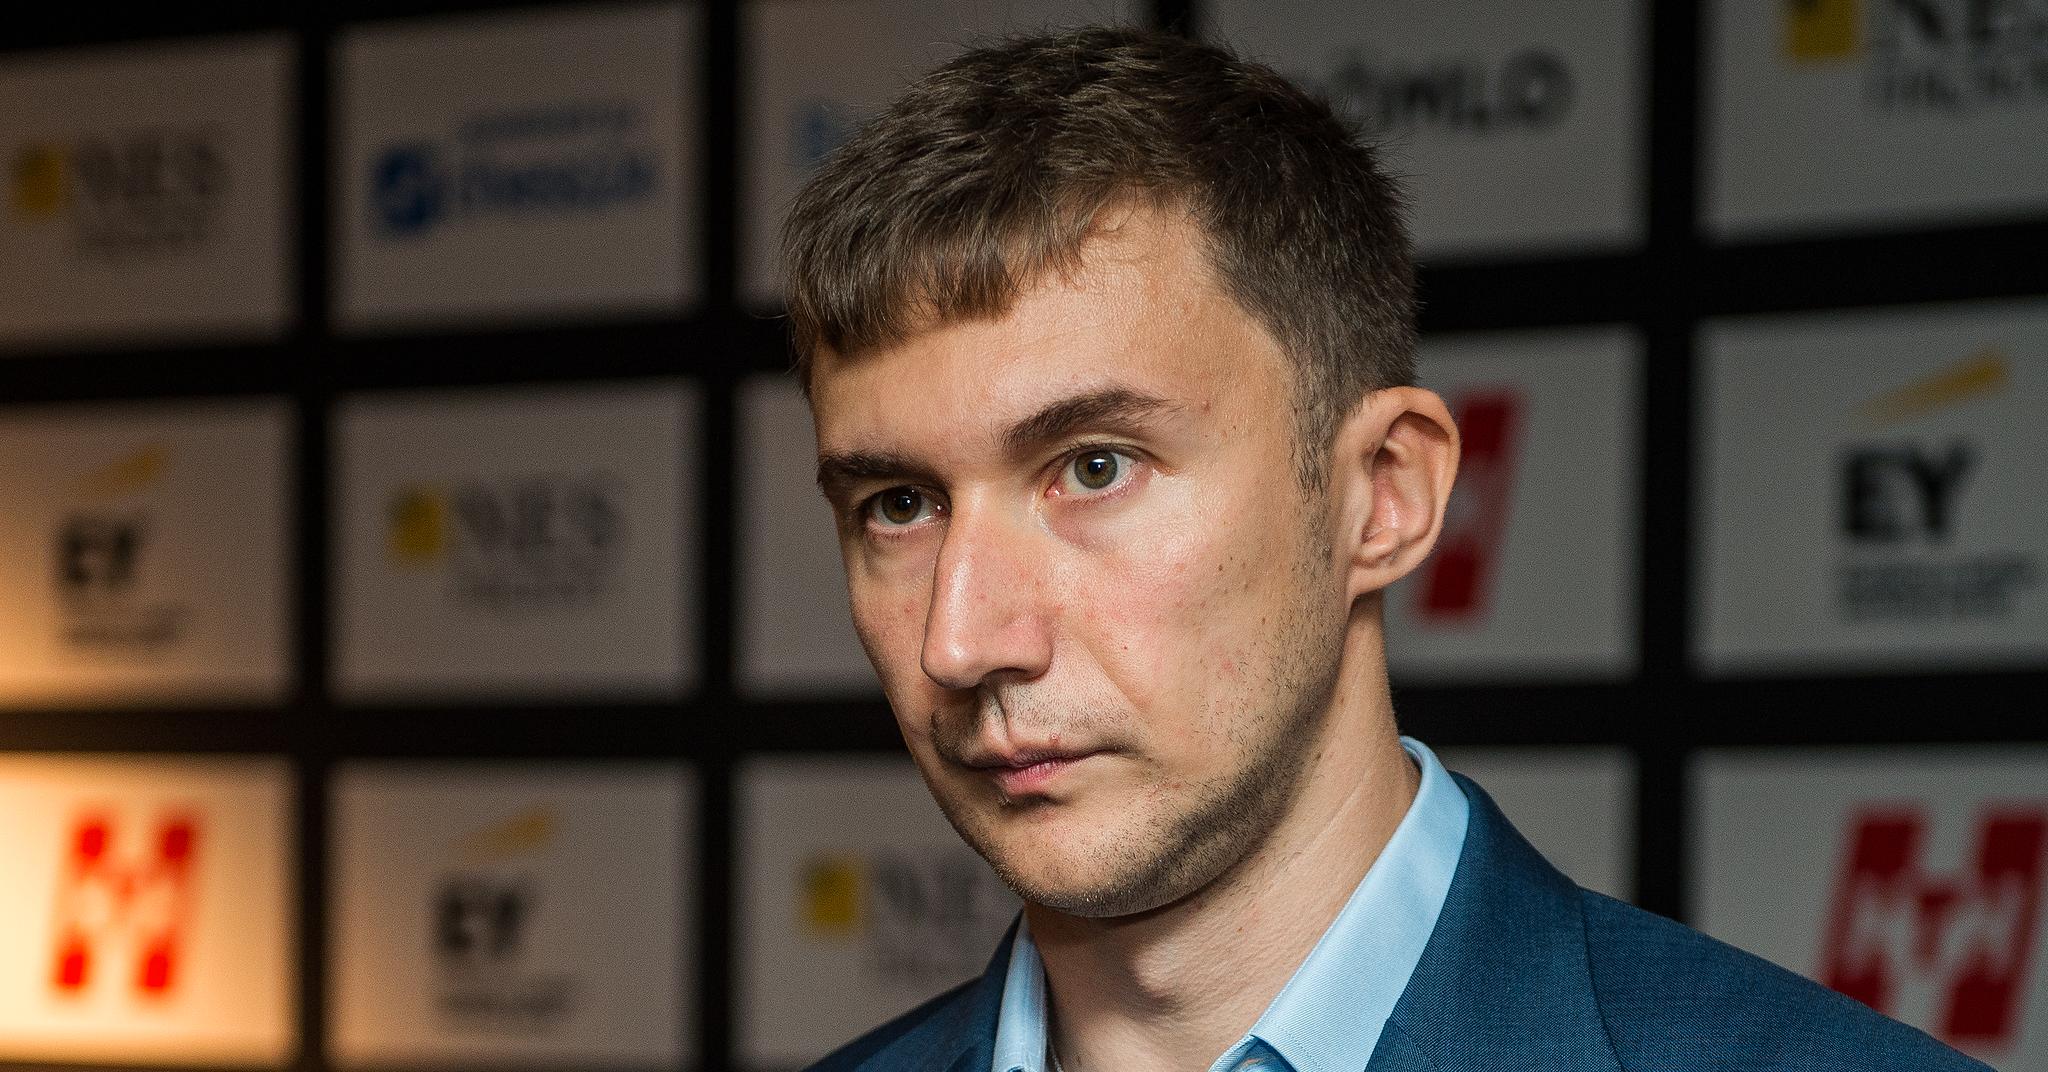 Sergej Karjakin spilte Norway Chess i 2021 - og det var trolig hans siste opptreden i storturneringen.